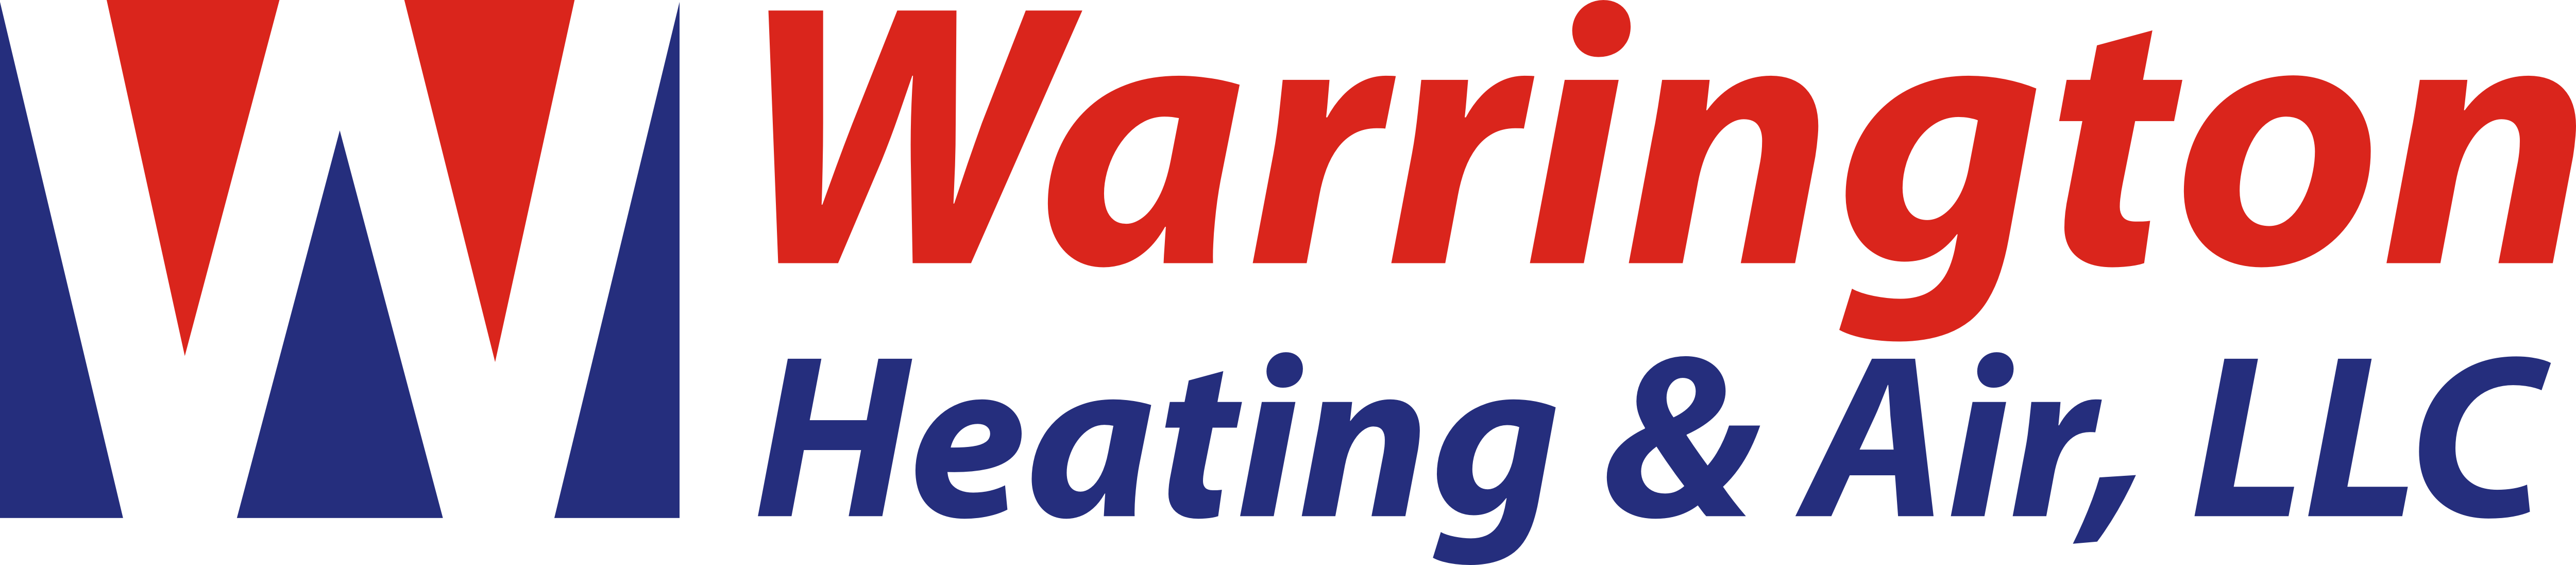 Warrington Heating & Air, LLC Logo